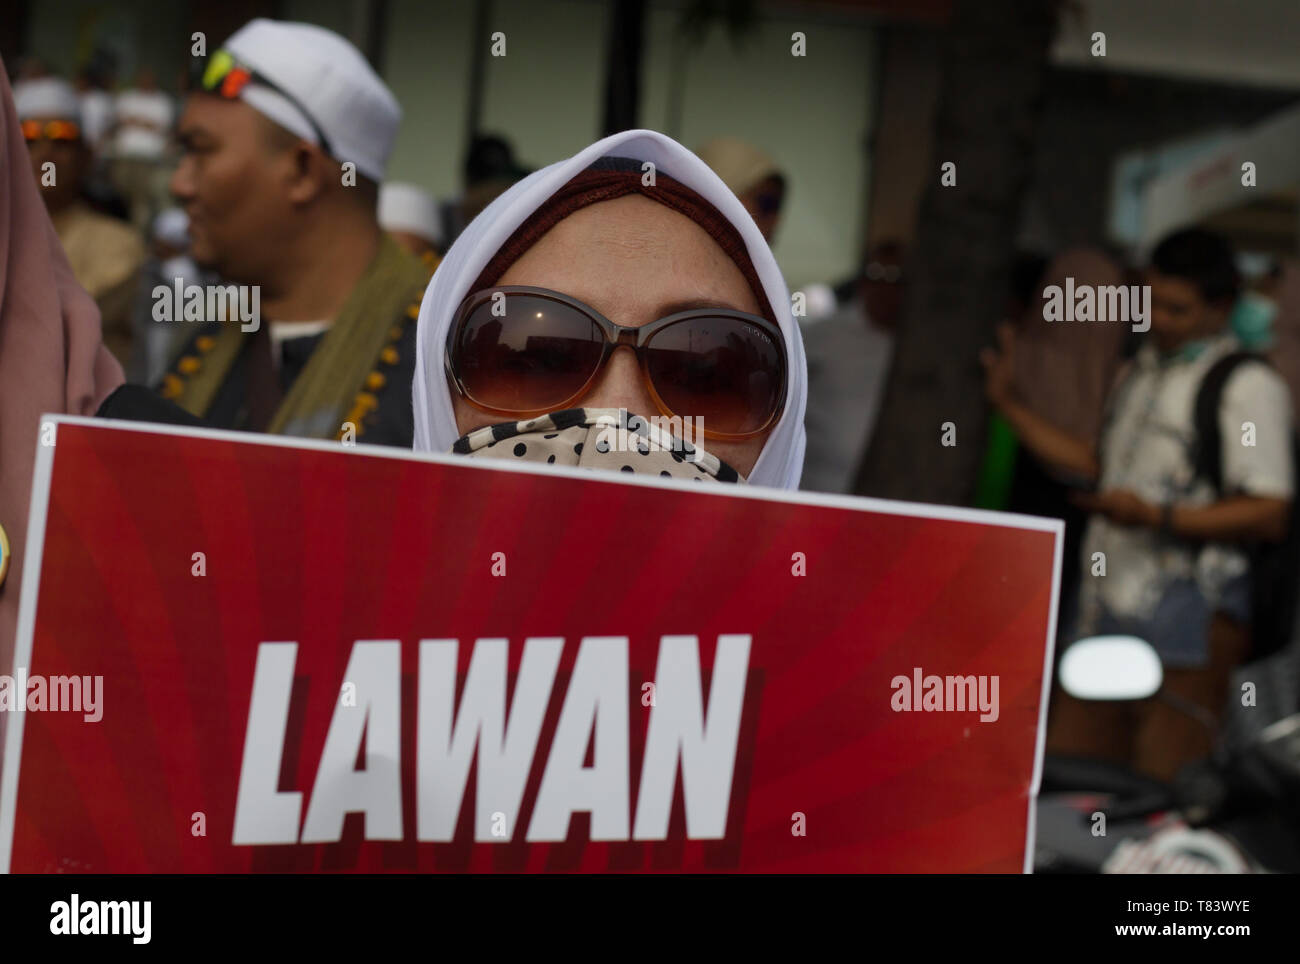 Una pancarta que dice Lawan visto durante la demostración. Simpatizantes del candidato presidencial Prabowo Subianto demostrada acerca de los resultados de las elecciones que fueron considerados fraudulentos en frente del edificio del organismo electoral o Bawaslu. Foto de stock